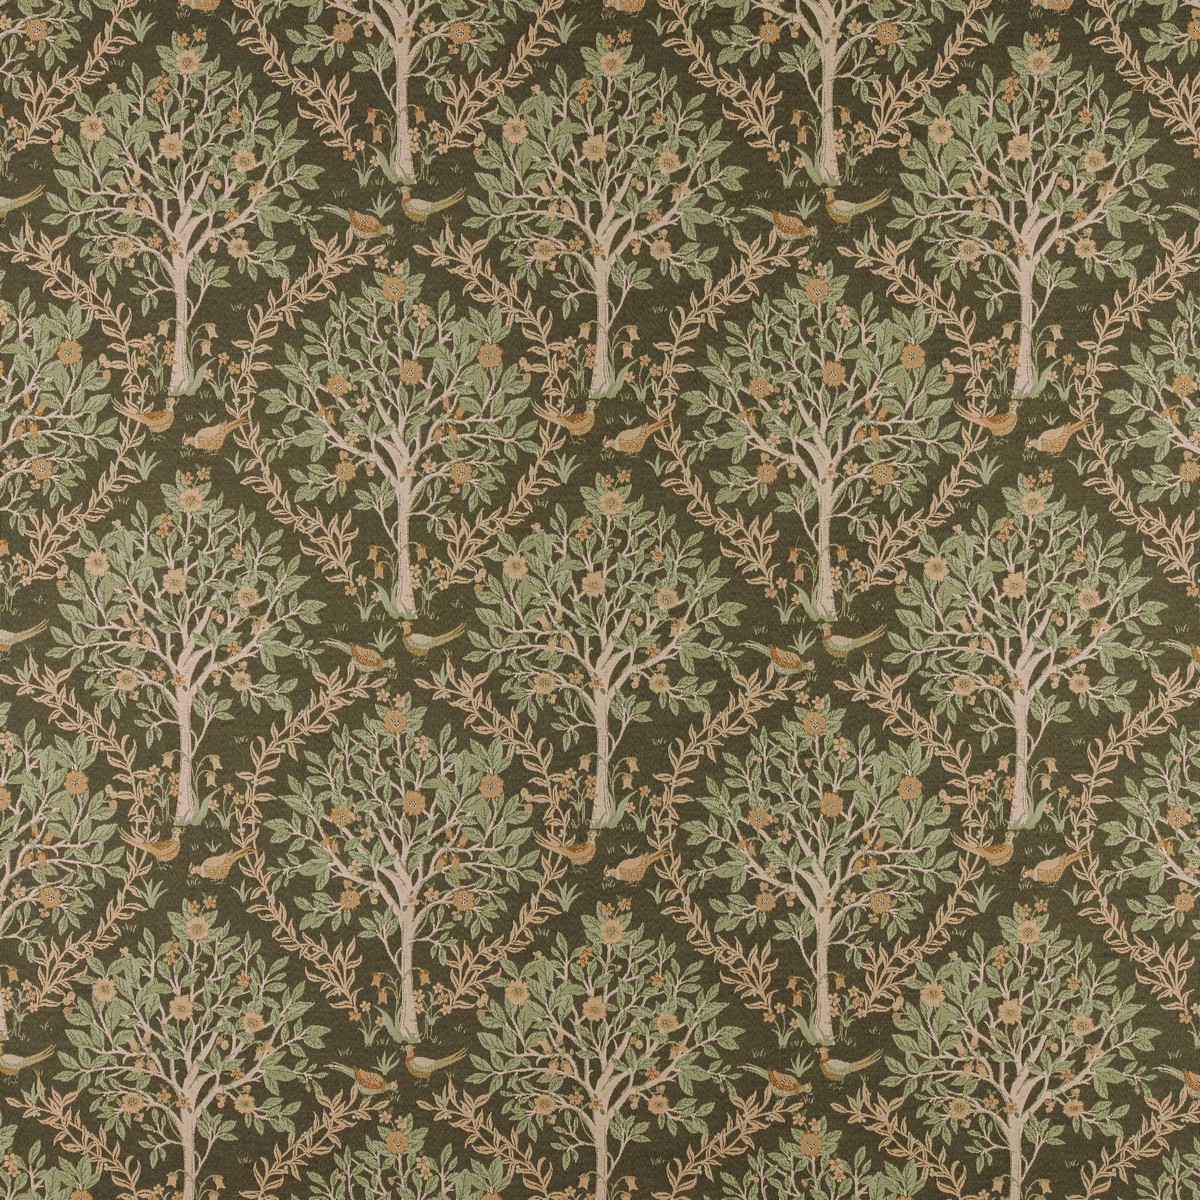 Bedgebury Forest Fabric by Ashley Wilde